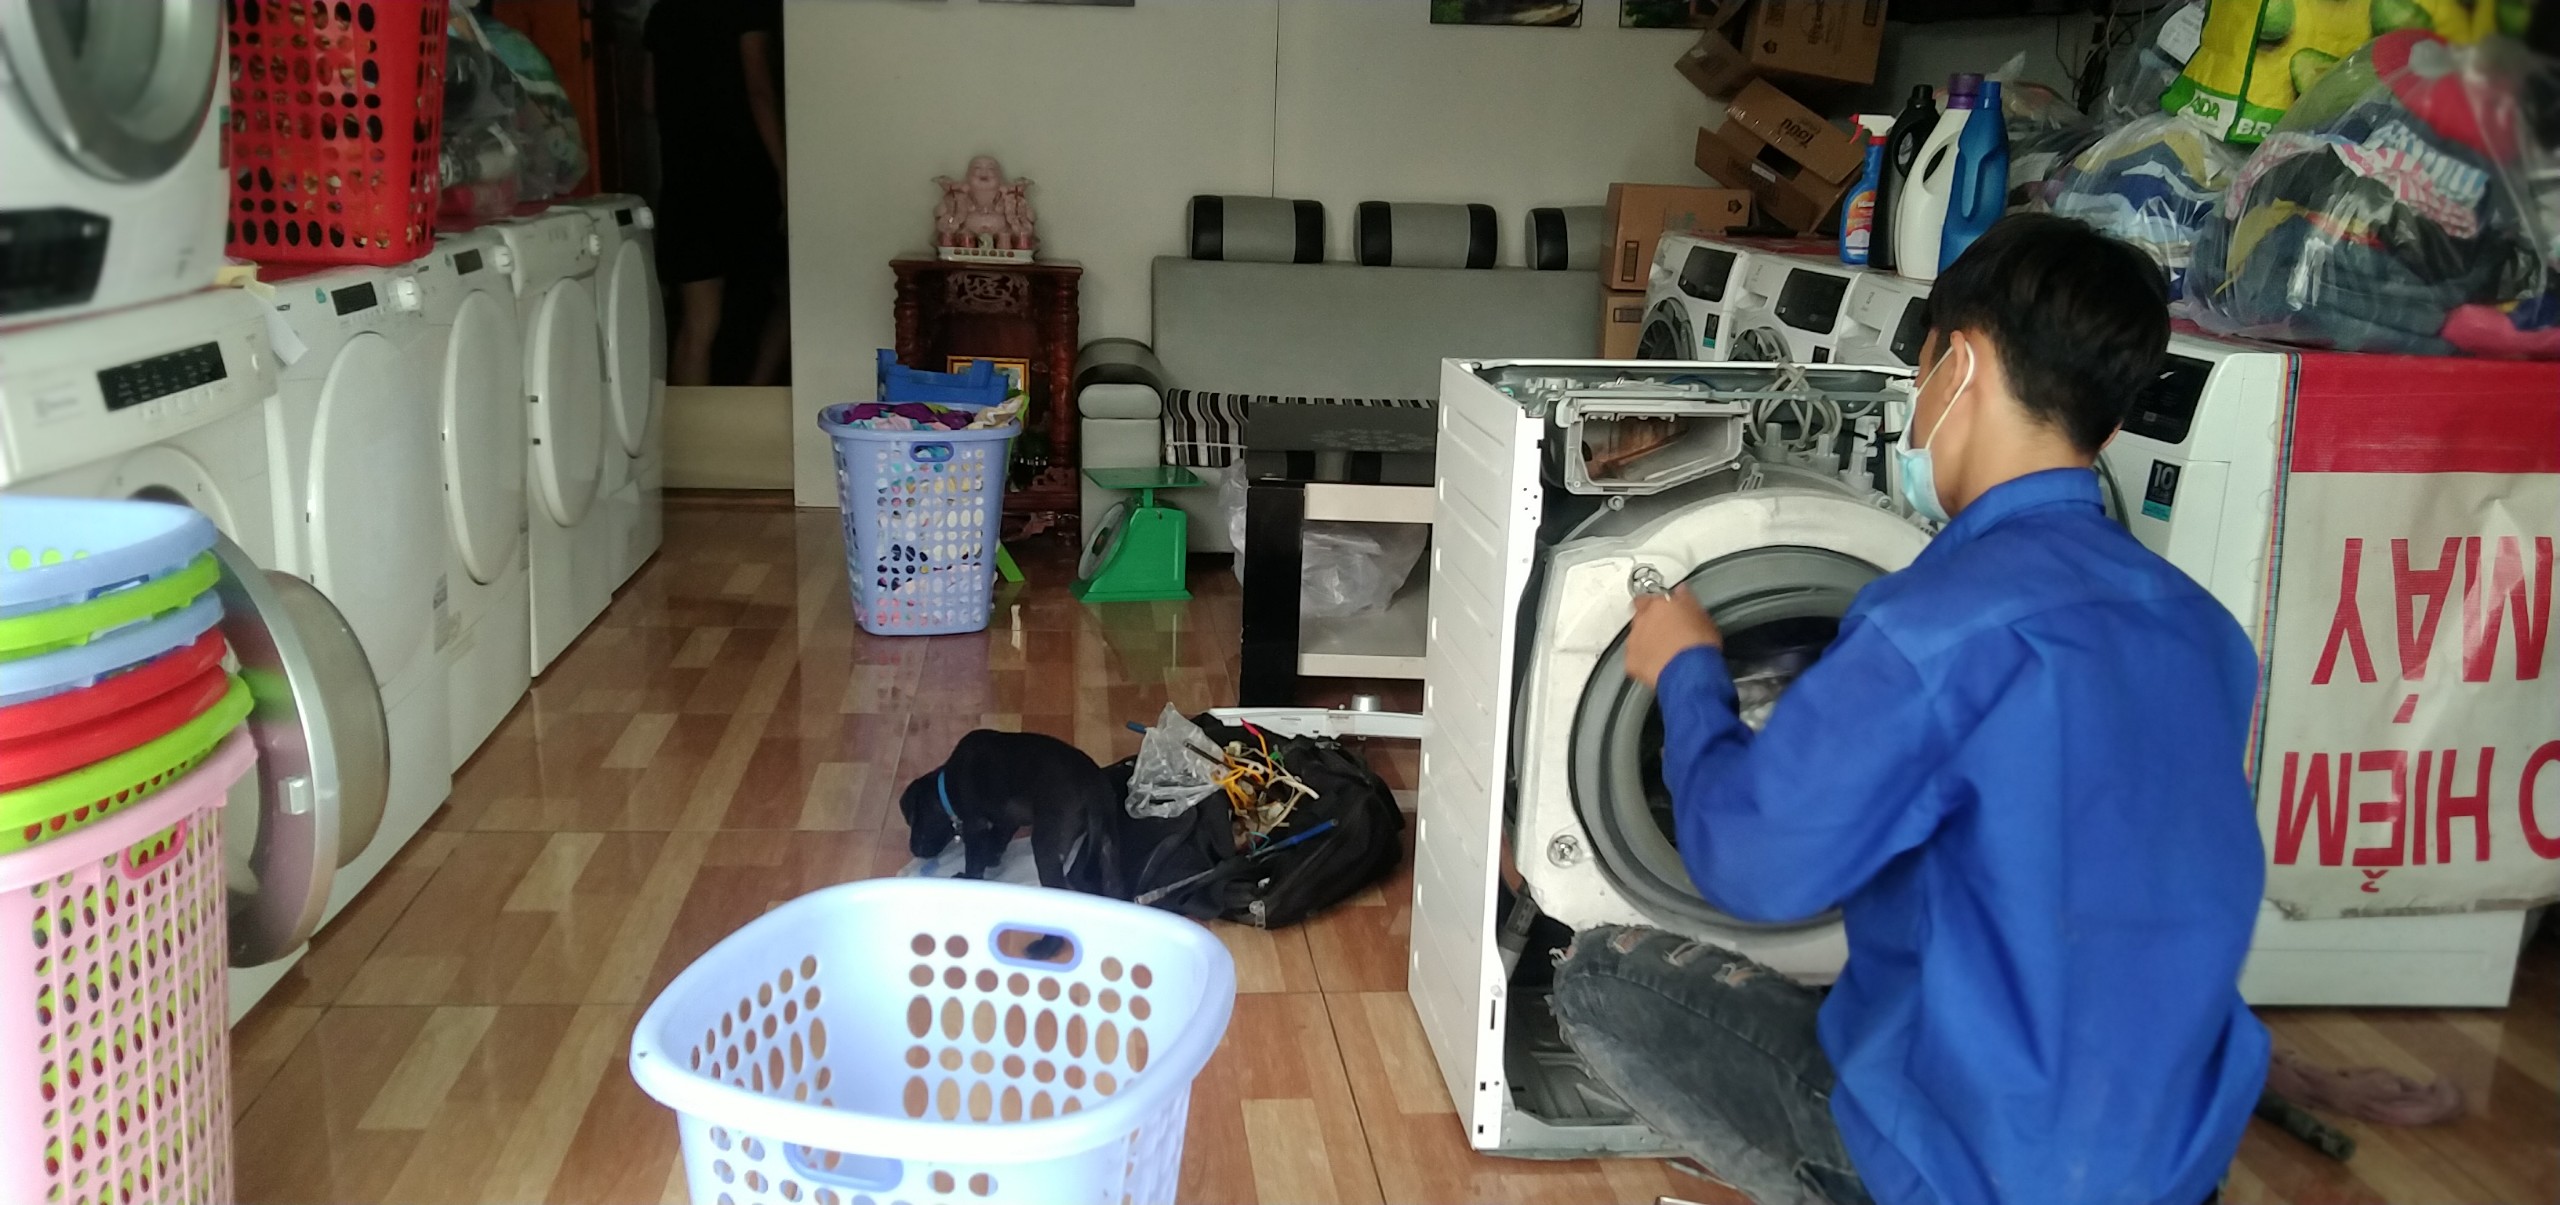 Dịch vụ máy giặt tại Biên Hòa Đồng Nai